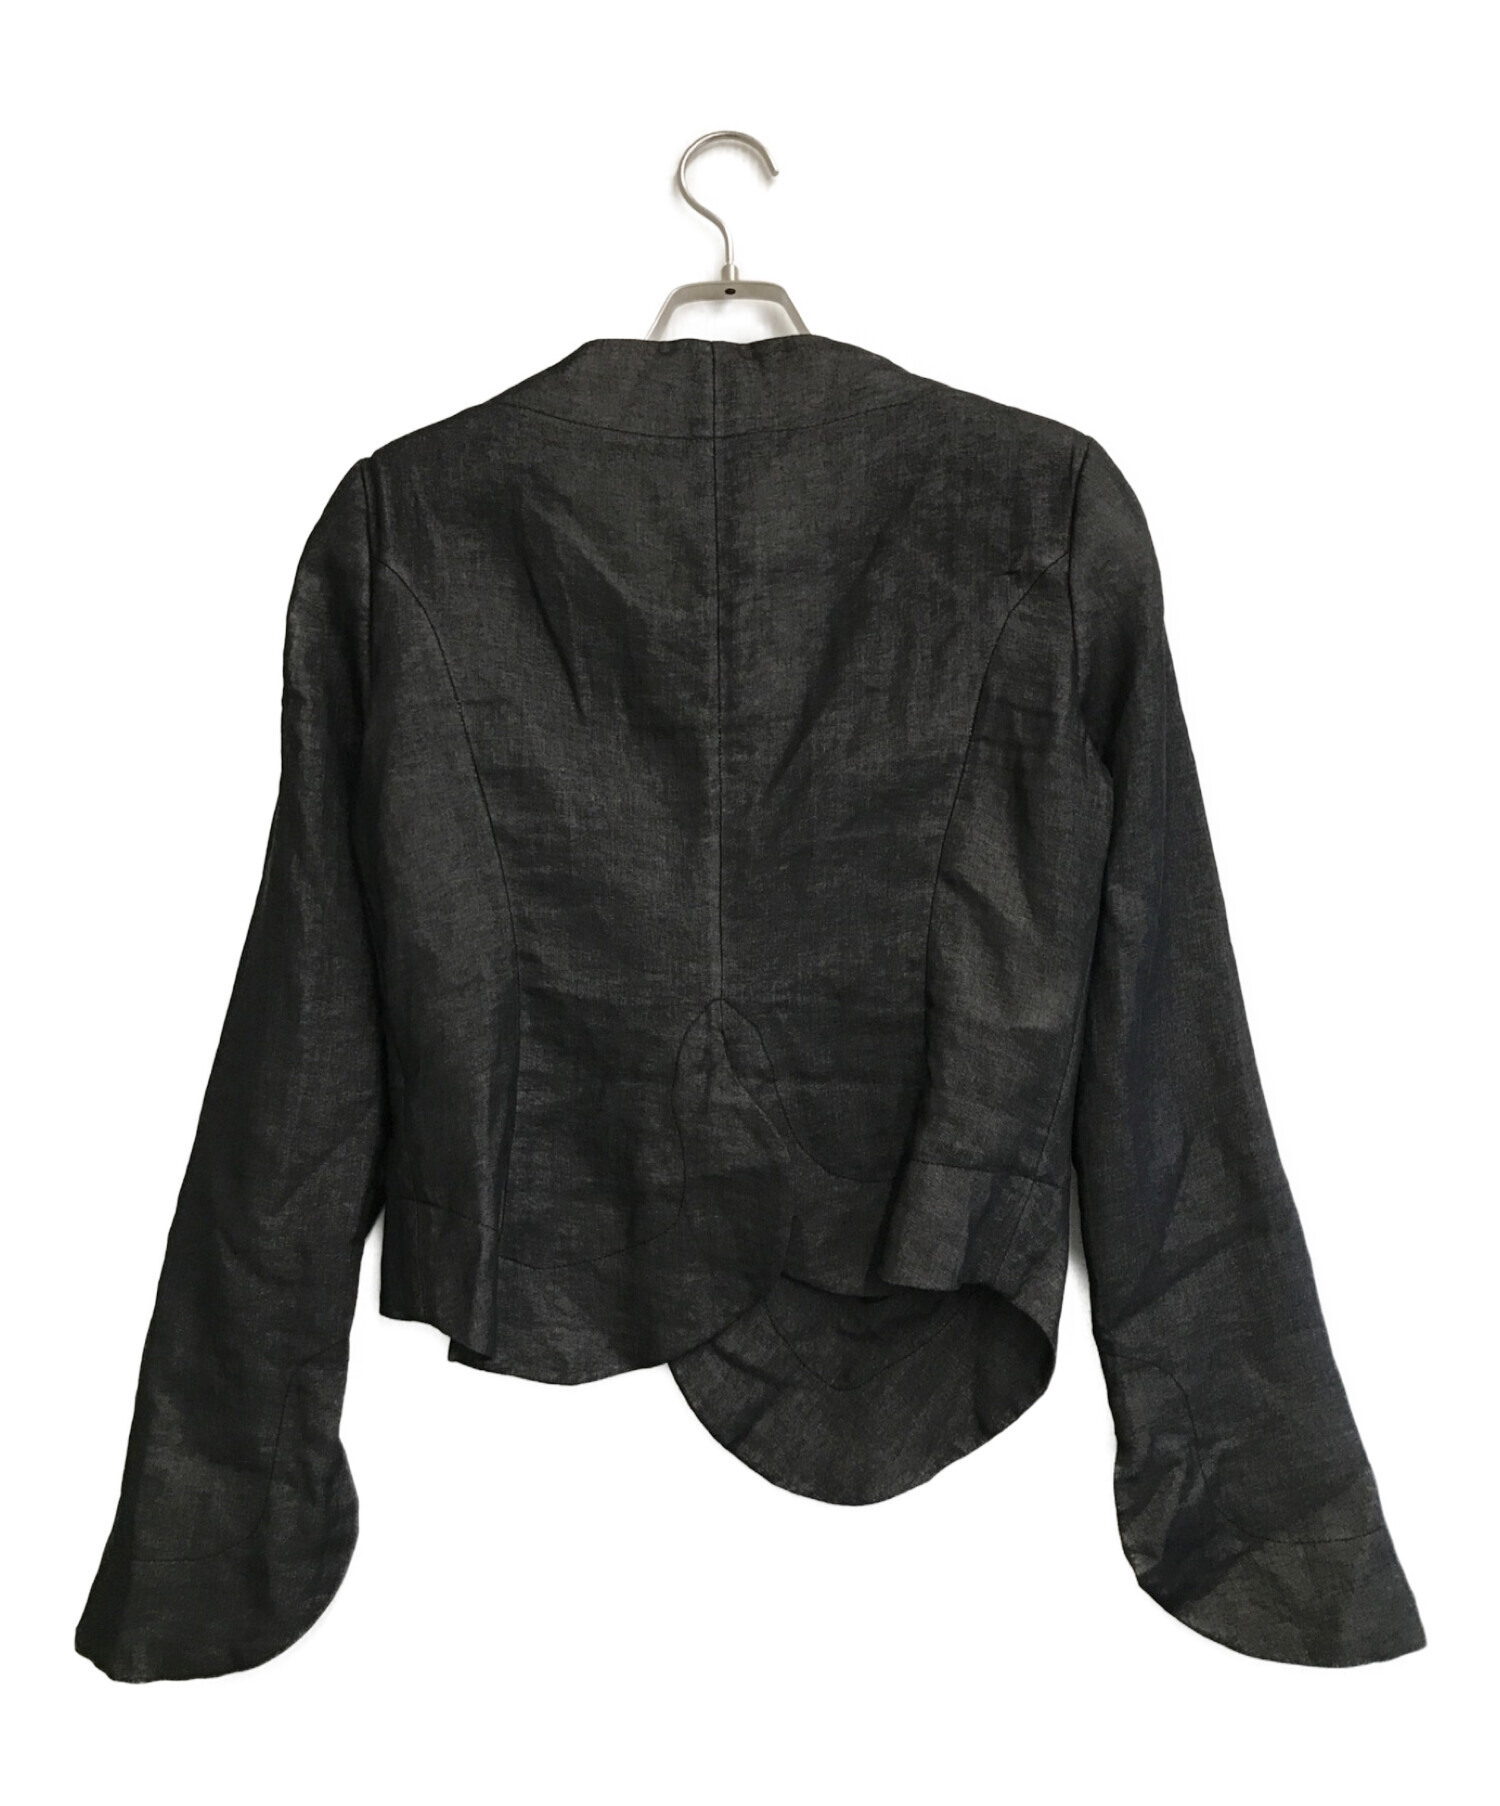 Vivienne Westwood ANGLOMANIA (ヴィヴィアンウエストウッド アングロマニア) リネン混ジャケット ブラック サイズ:42